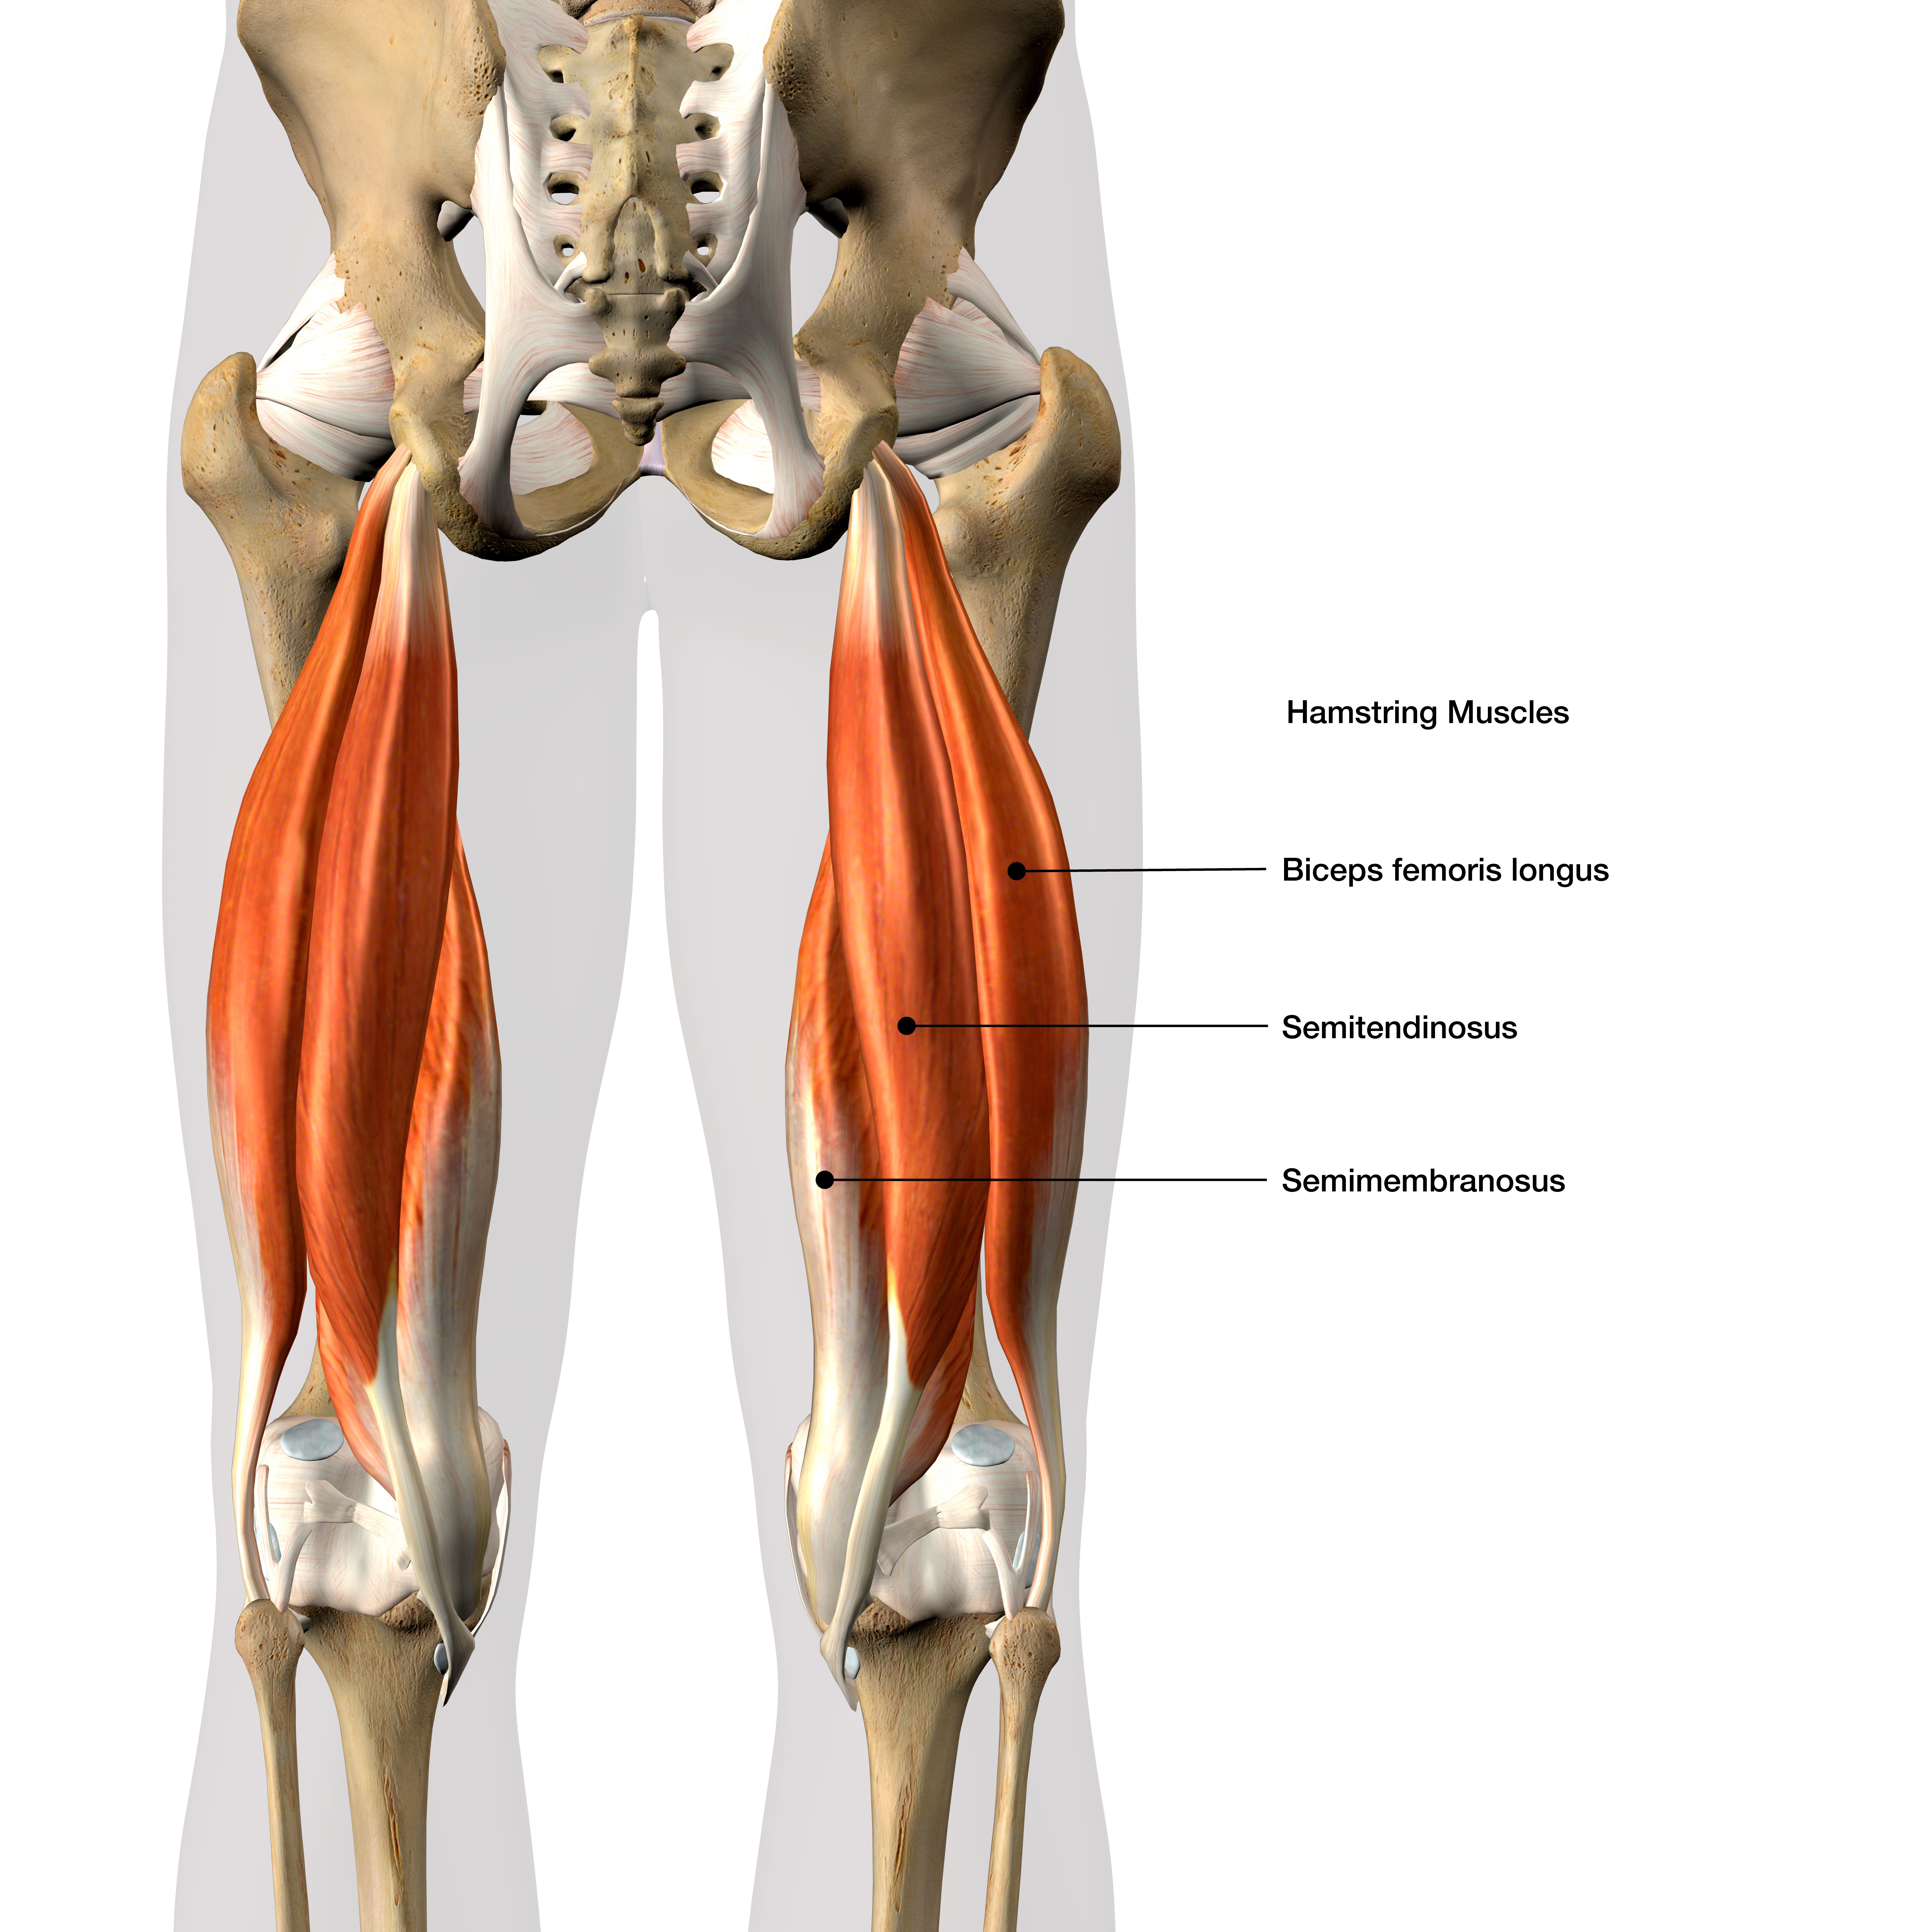 Le muscle soléaire est un muscle du membre inférieur situé à l'arrière de la jambe © HANK GREBE, Adobe Stock